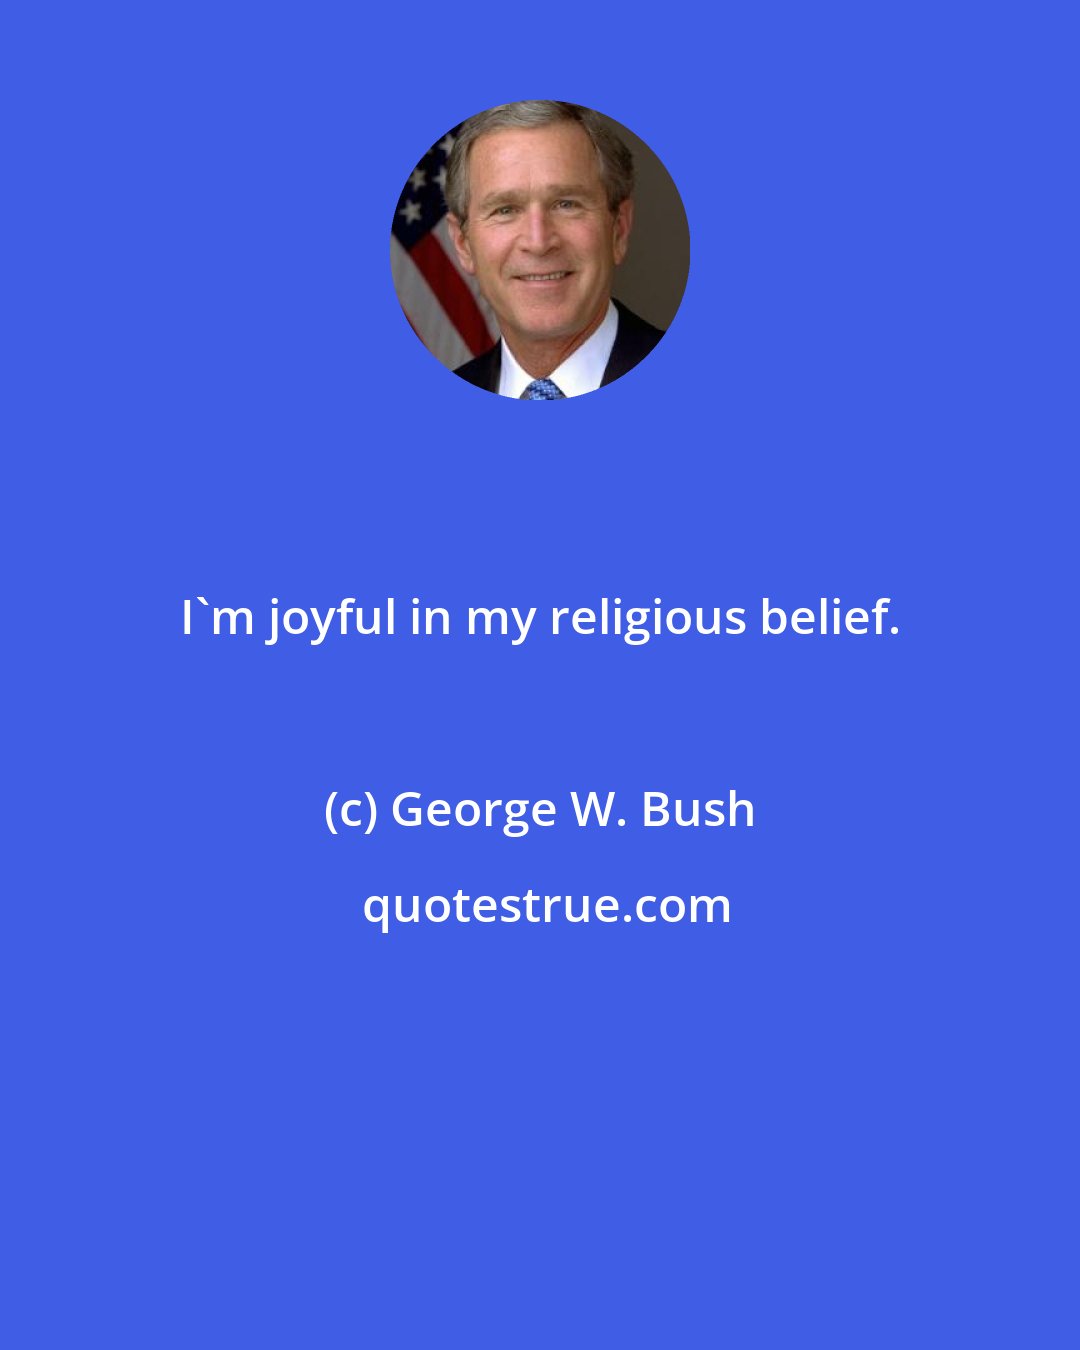 George W. Bush: I'm joyful in my religious belief.